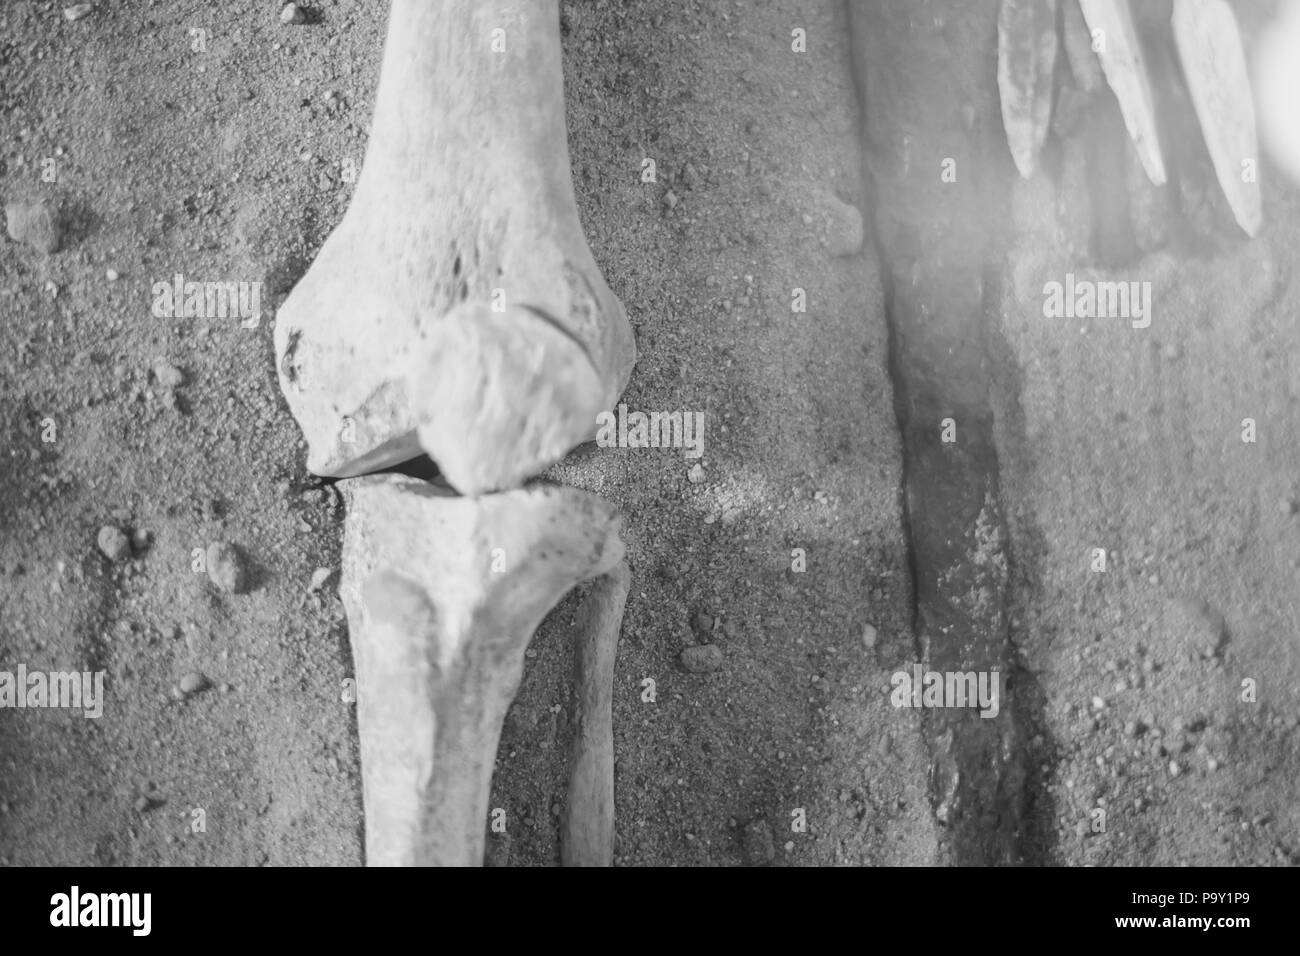 Scavi archeologici e trova le ossa di uno scheletro in una sepoltura umana , un dettaglio di antiche ricerca, preistoria. Foto Stock